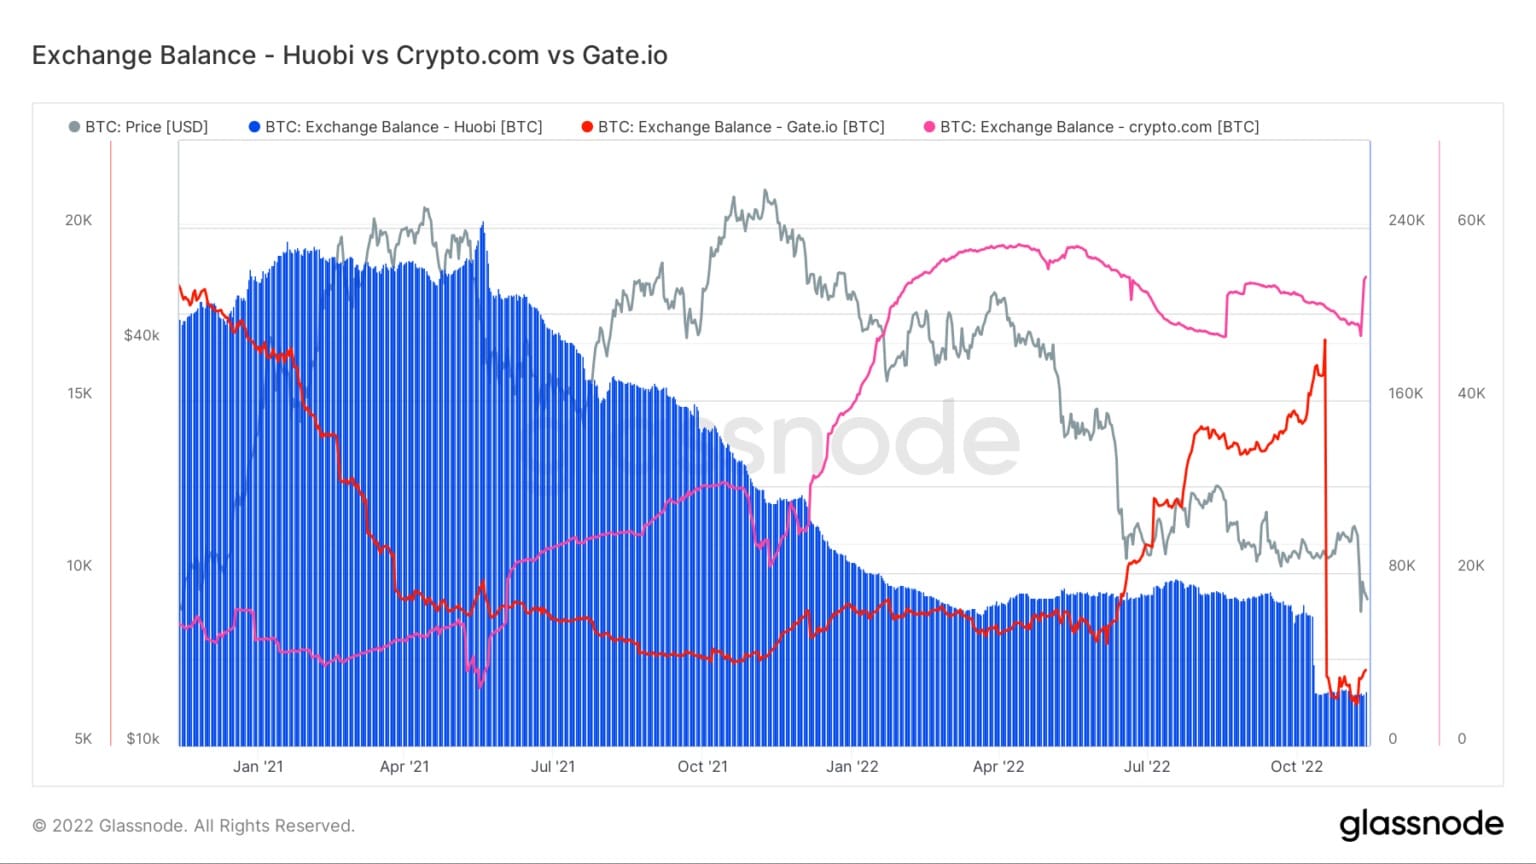 Grafico che mostra i saldi di Bitcoin su Huobi, Crypto.com e Gate.io da gennaio 2021 a novembre 2022 (Fonte: Glassnode)